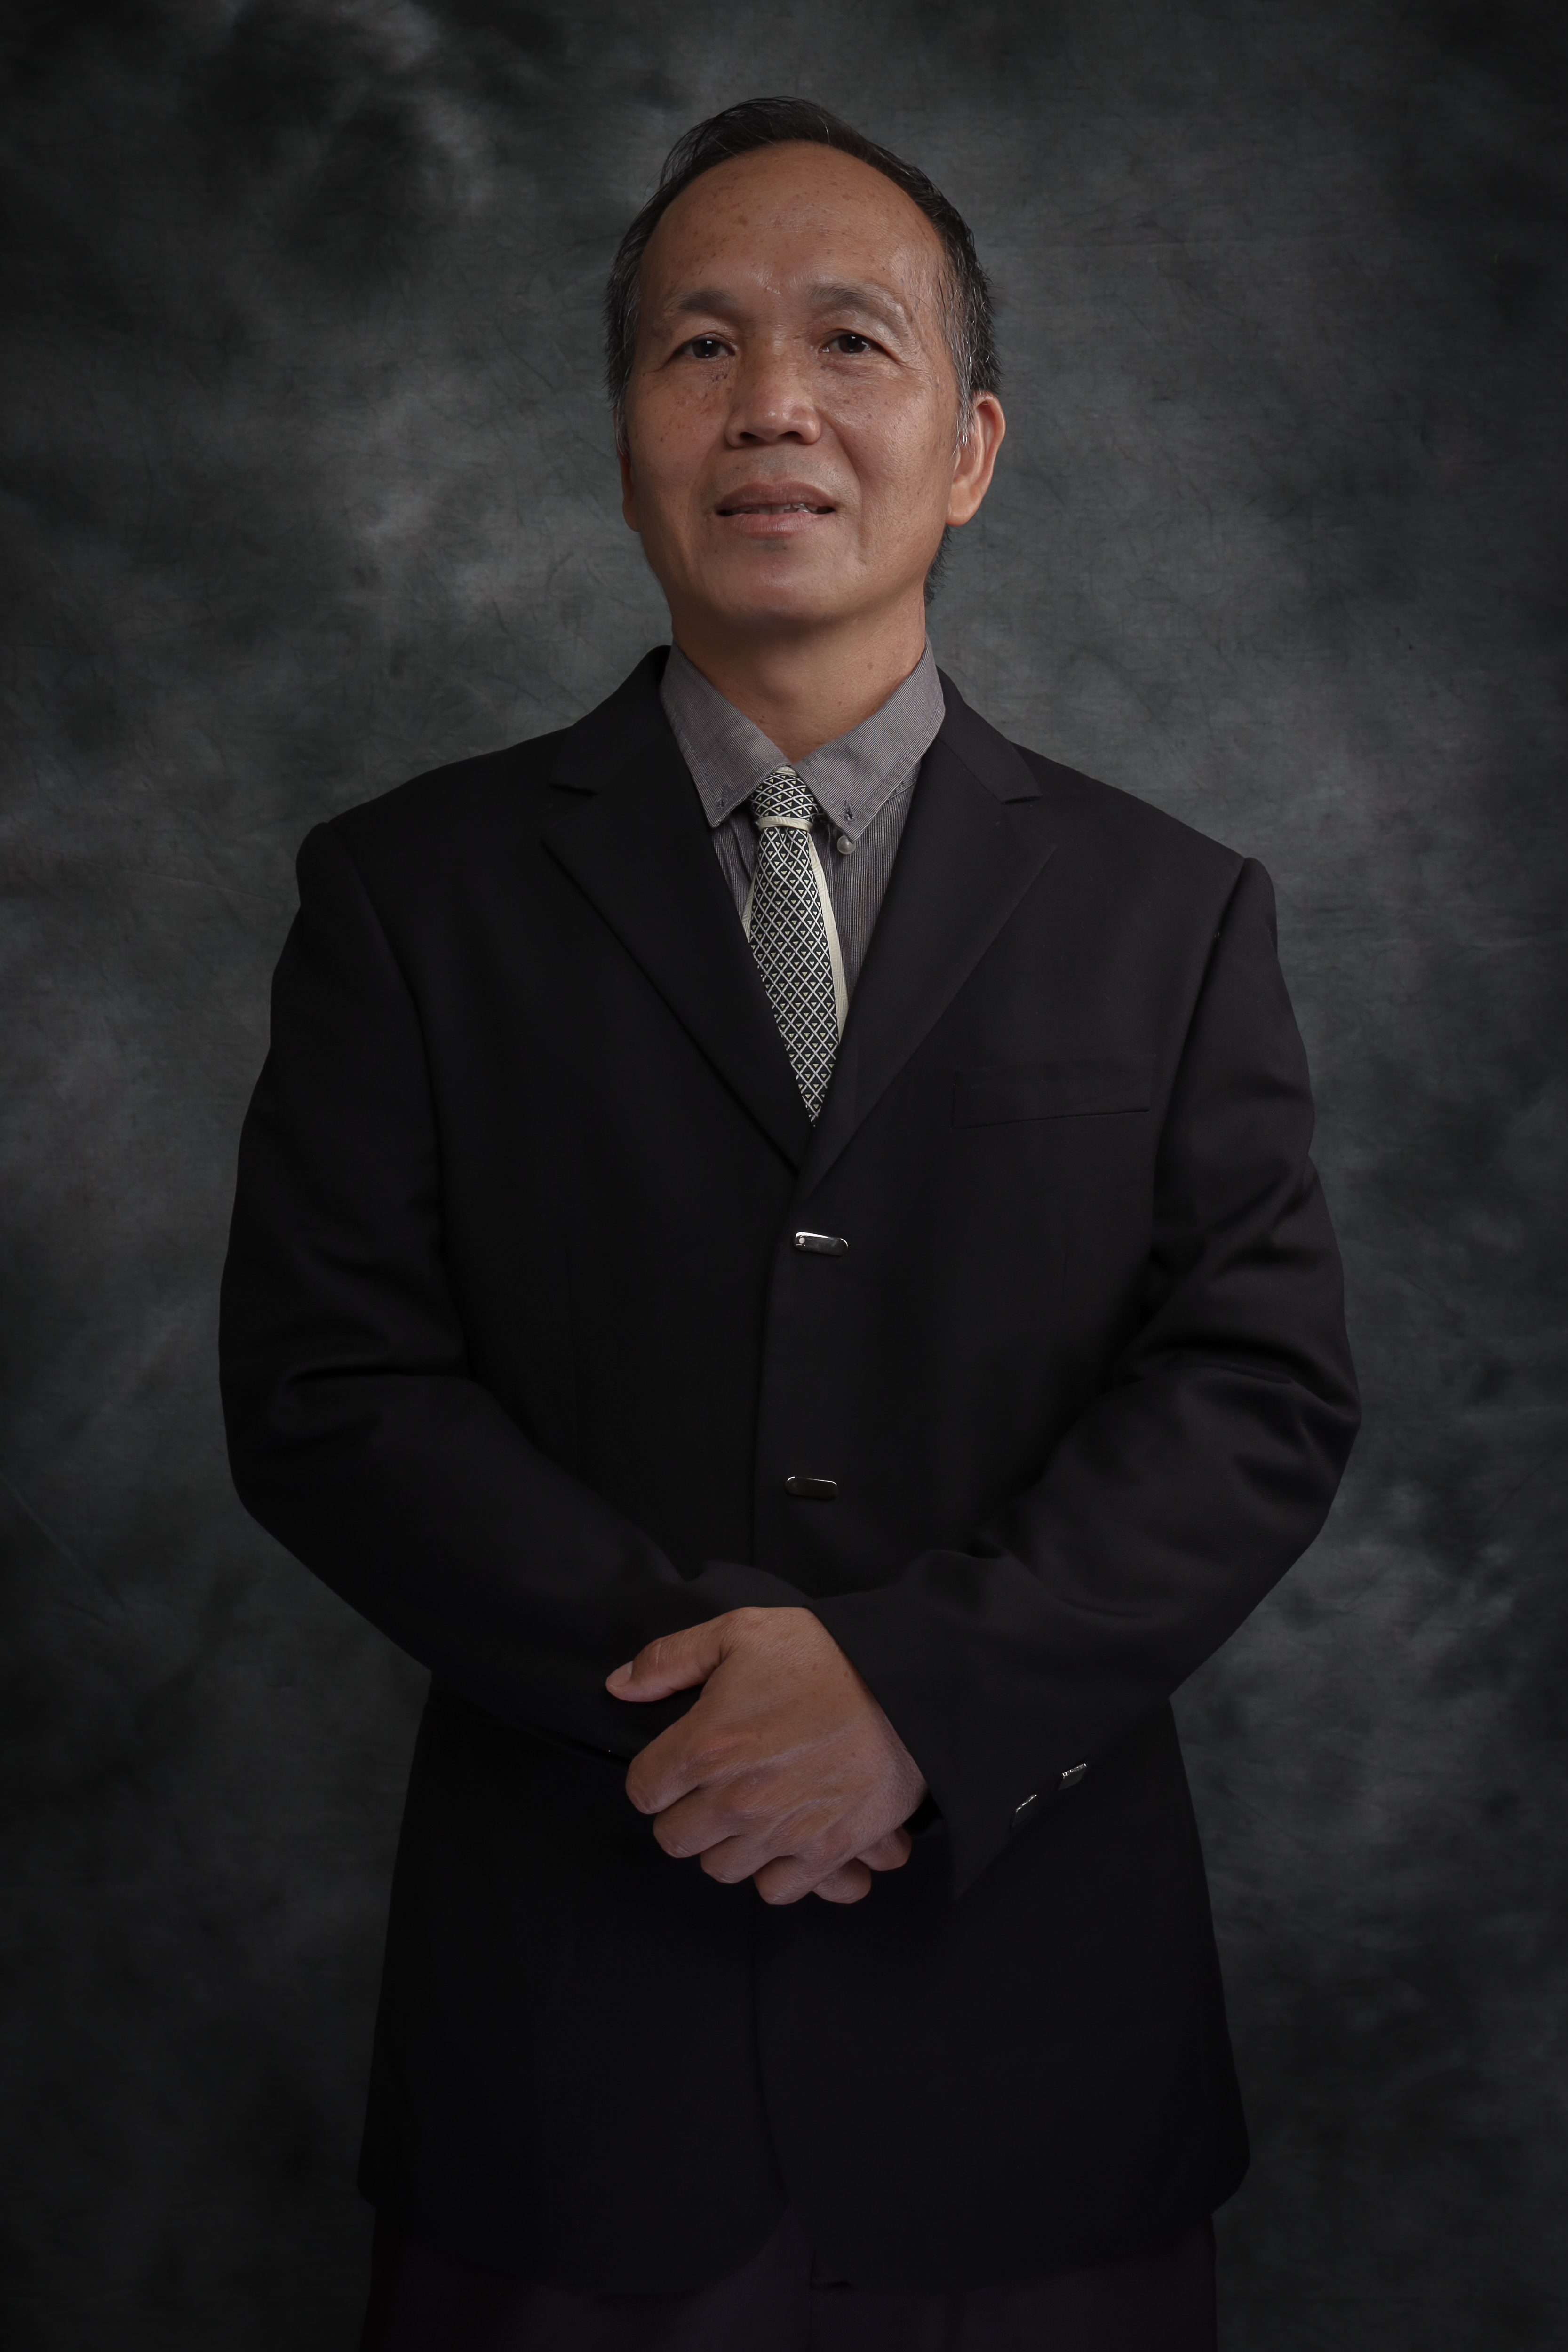 Dr Samuel Lihan